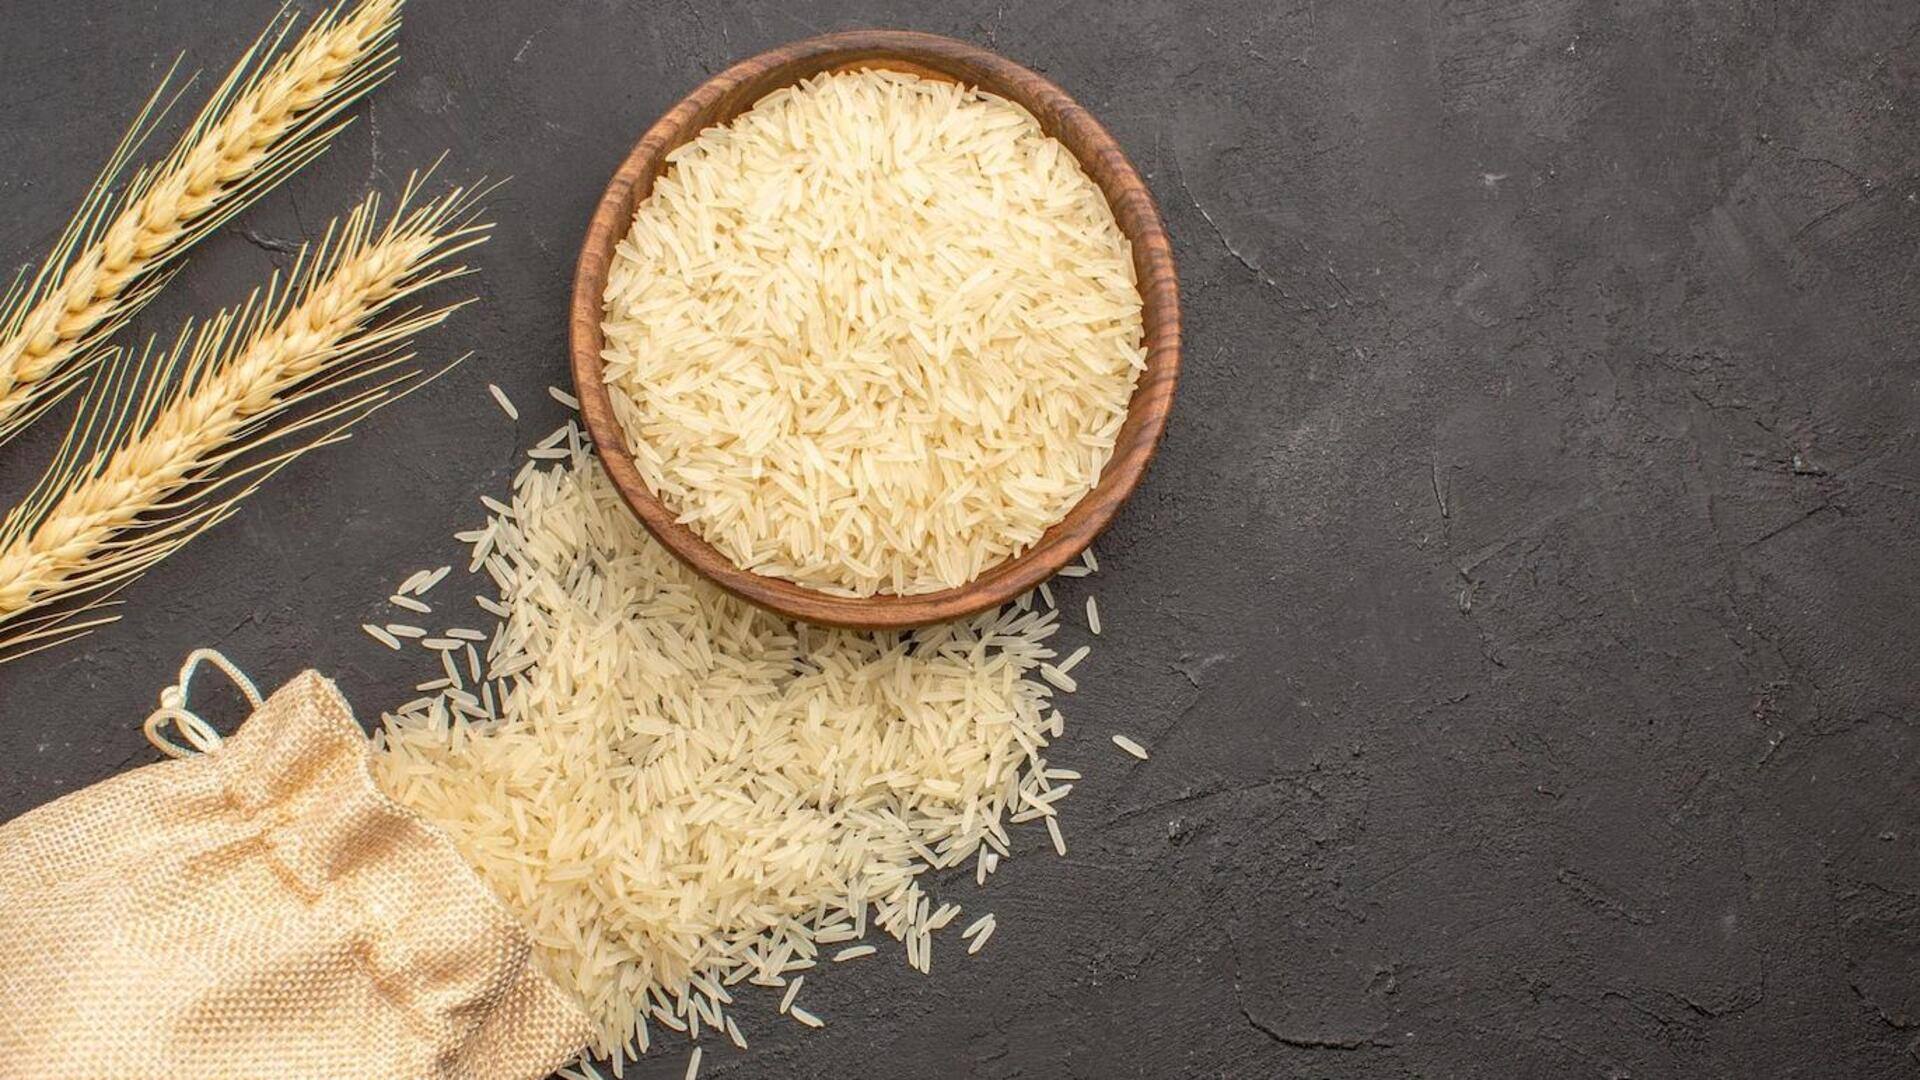 महंगाई कम करने के लिए गैर-बासमती चावल के निर्यात पर प्रतिबंध लगा सकती है सरकार- रिपोर्ट